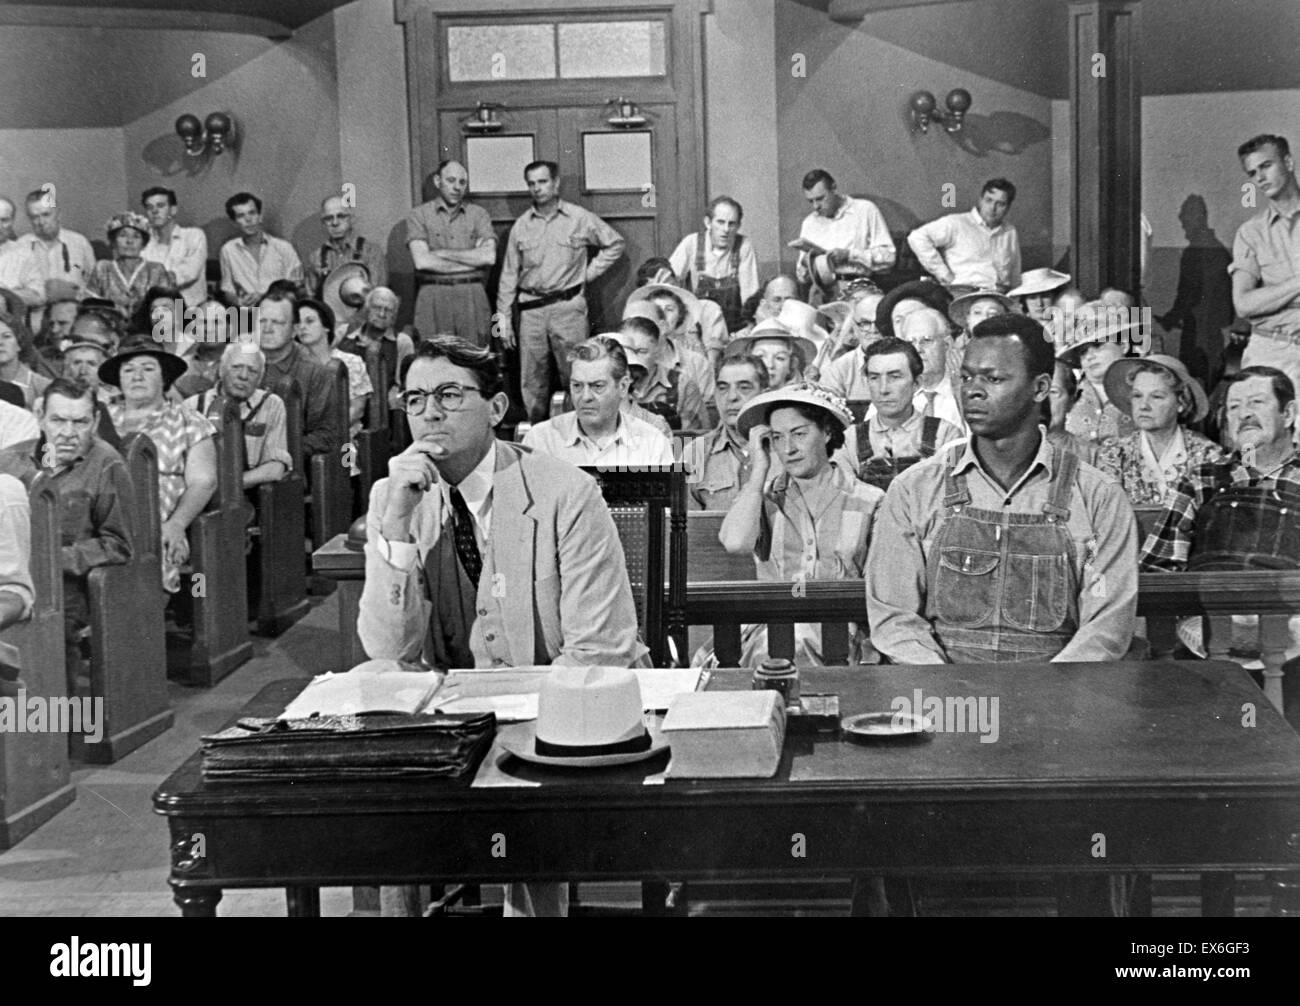 Film still aus "To Kill a Mockingbird" mit Gregory Peck (1916-2003) Charakter, Atticus, ist vor Gericht. Datierte 1962 Stockfoto